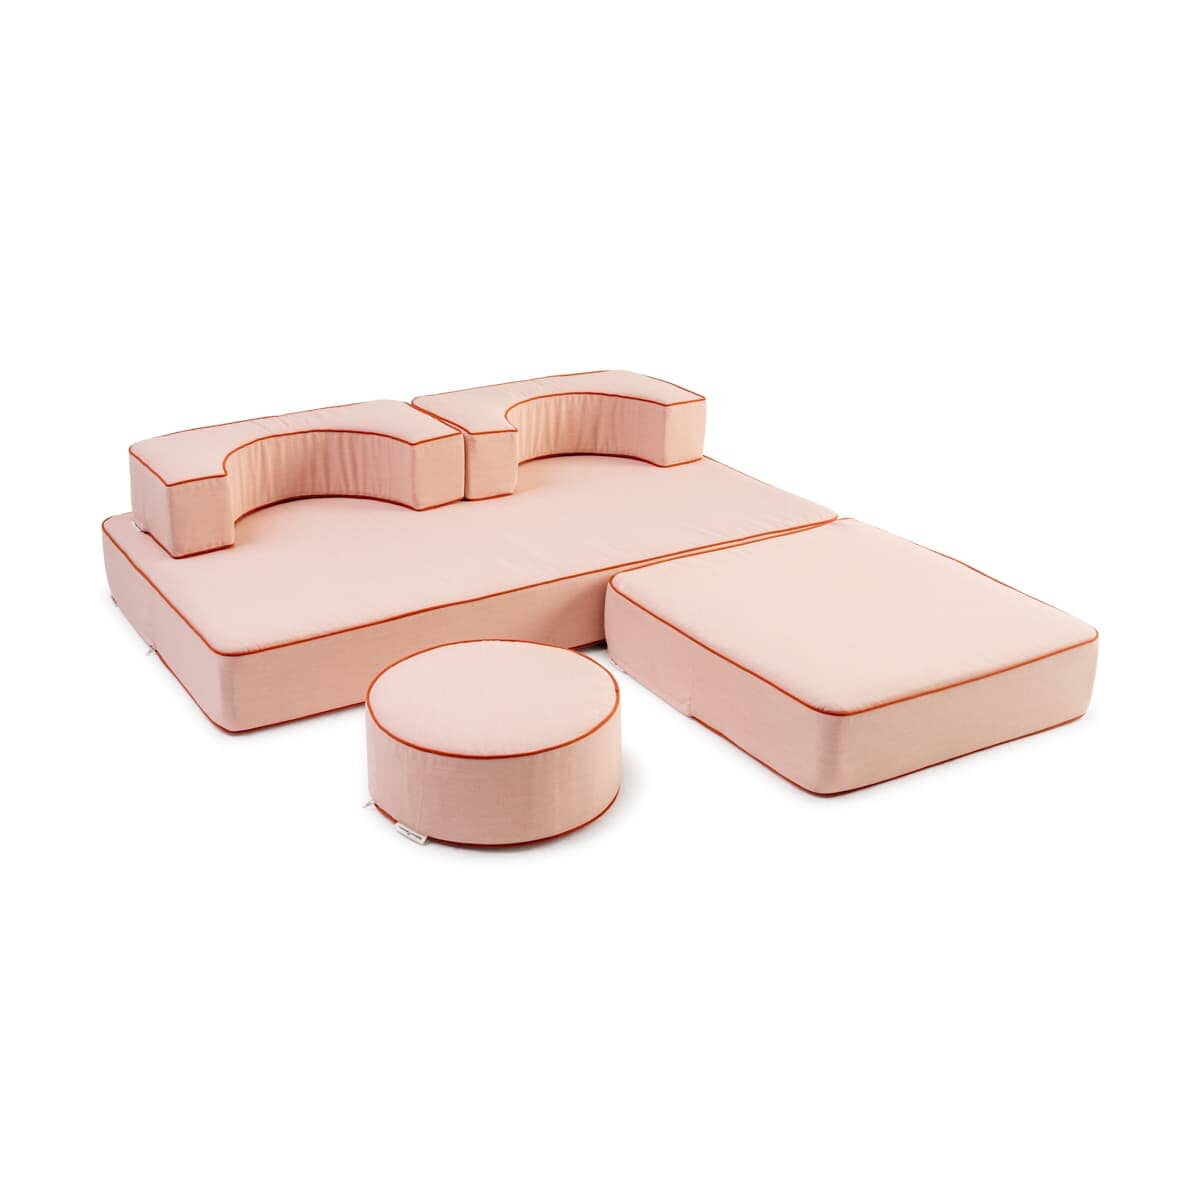 Studio image of riviera pink modular pillow stack